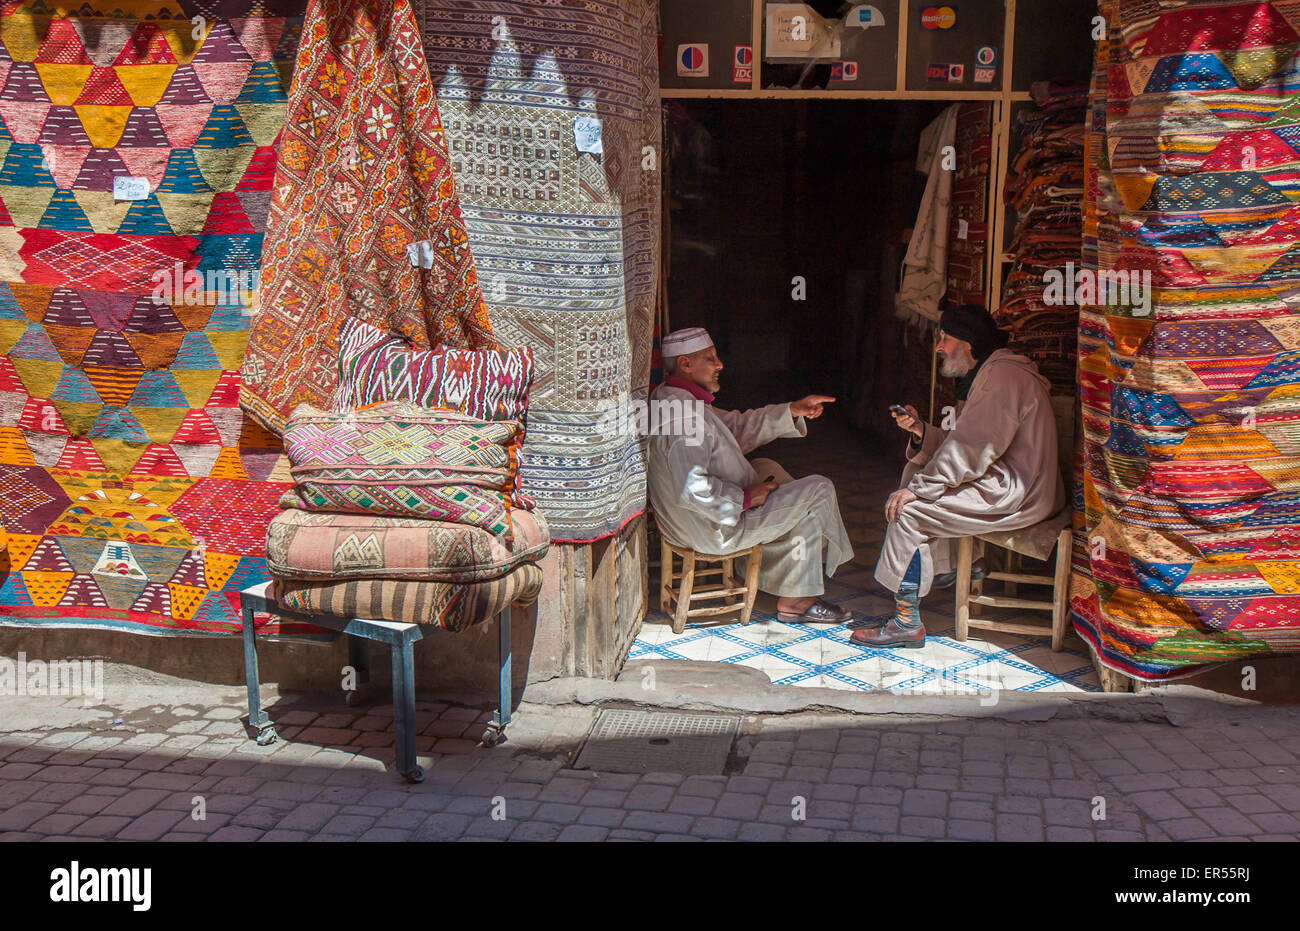 Marrakech, Maroc, 09 avril - 2013 : boutique de tapis à Marrakech, Maroc Banque D'Images